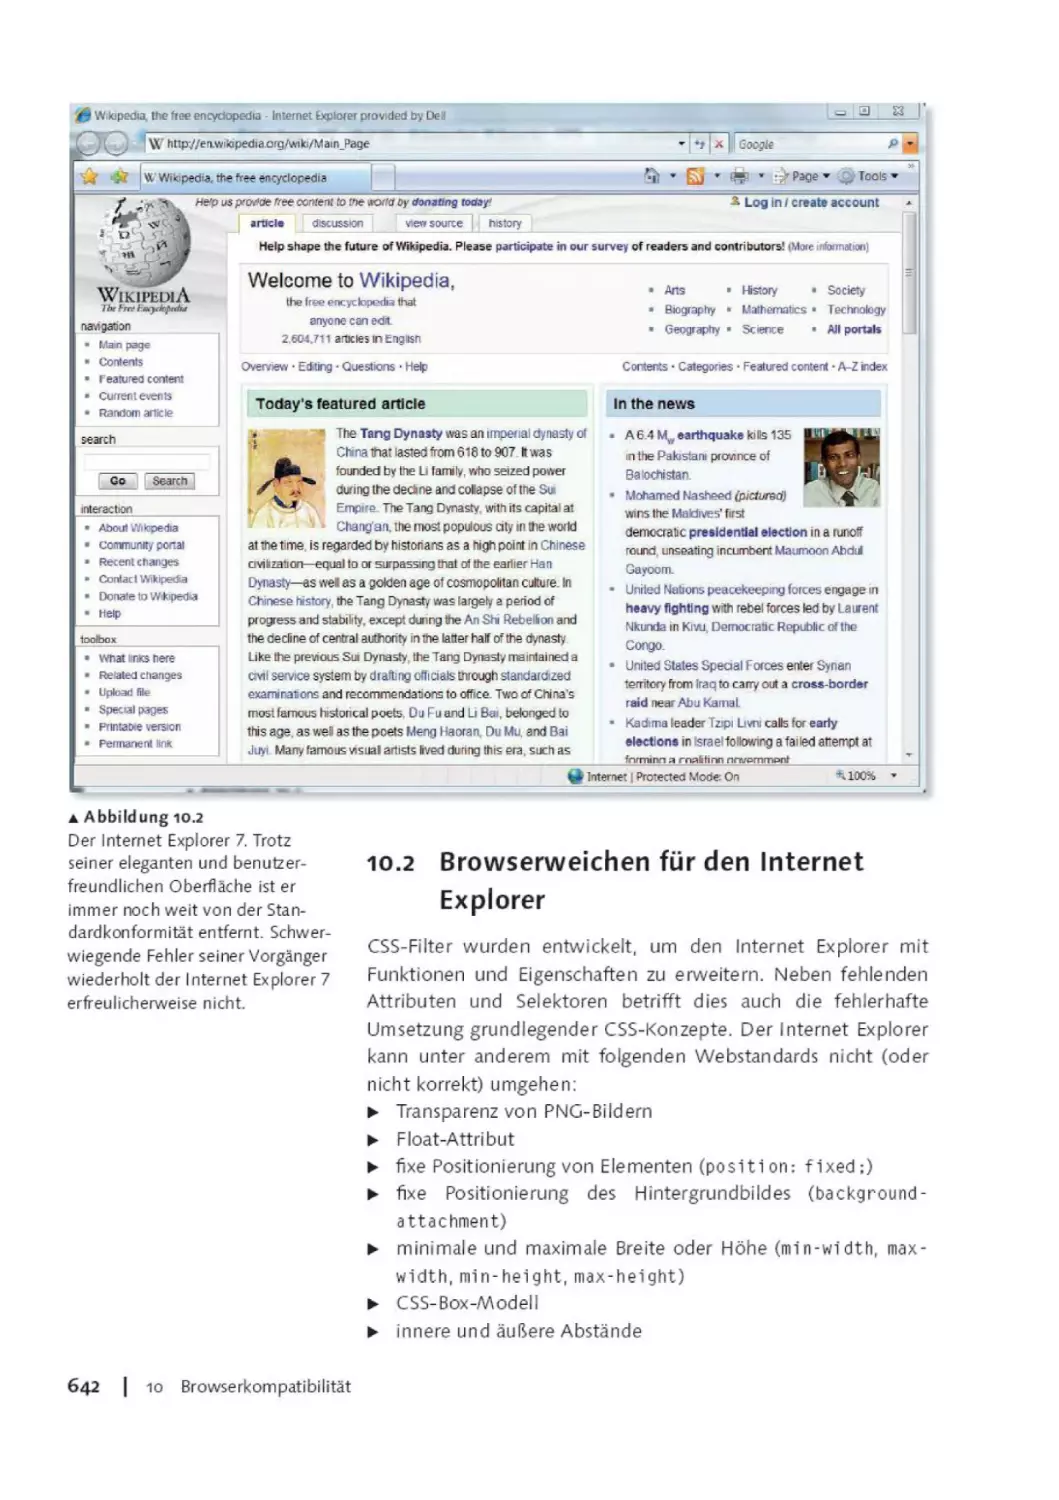 10.2     Browserweichen für den Internet Explorer